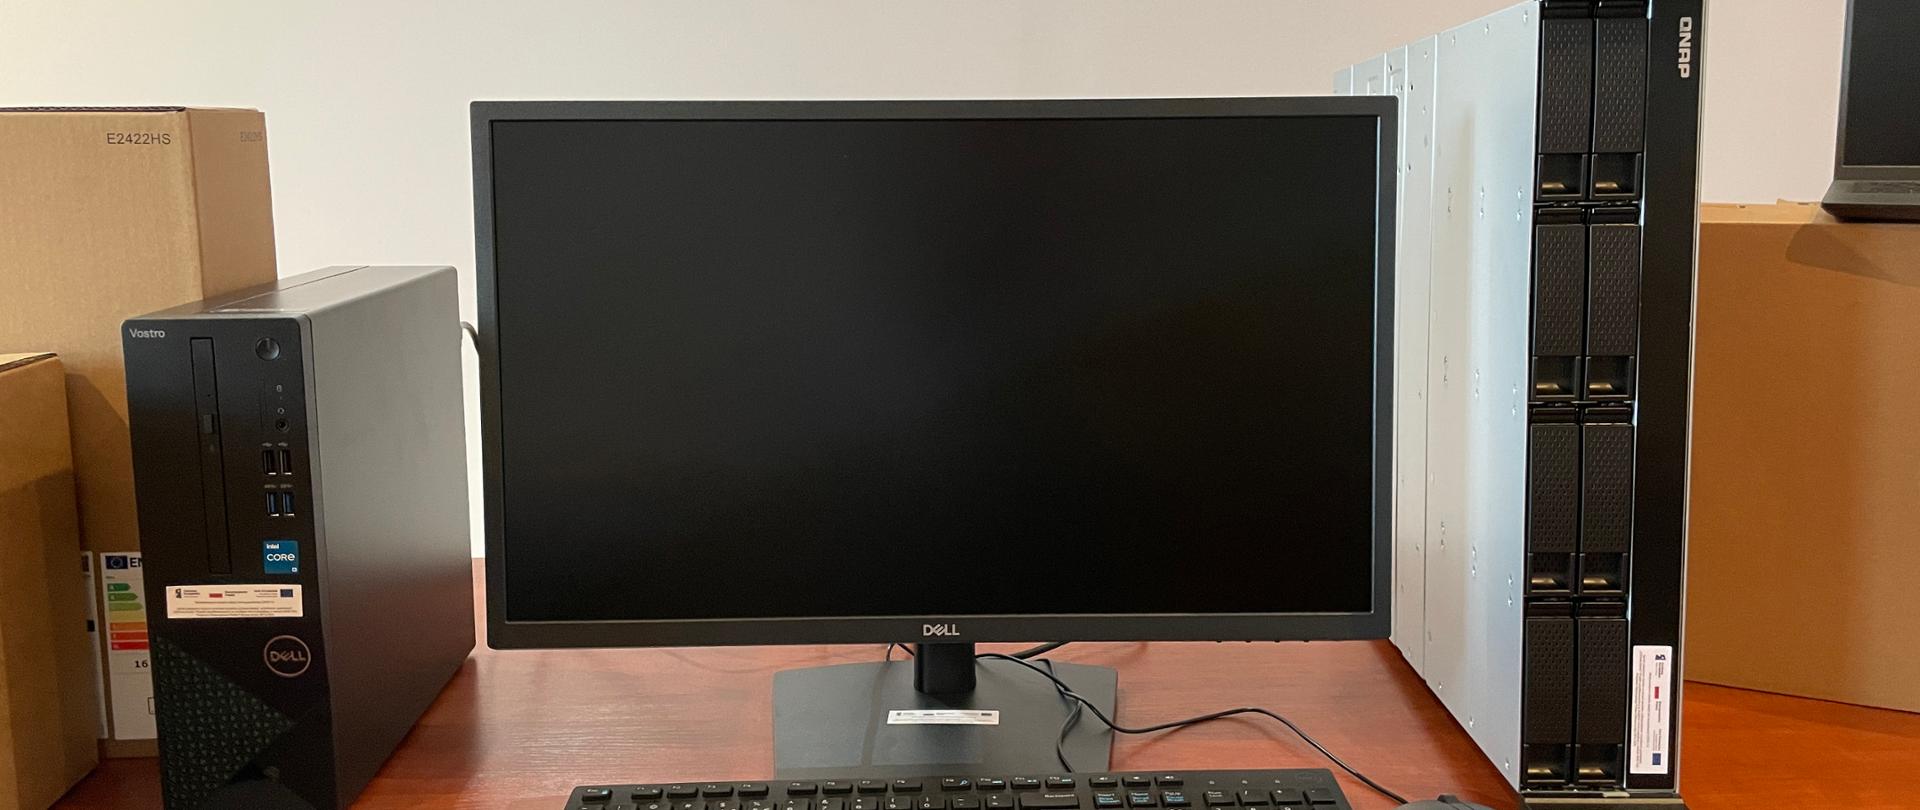 Komputer stacjonarny wraz z monitorem zakupiony w ramach projektu Cyfrowa Gmina, obok serwer plików Qnap.